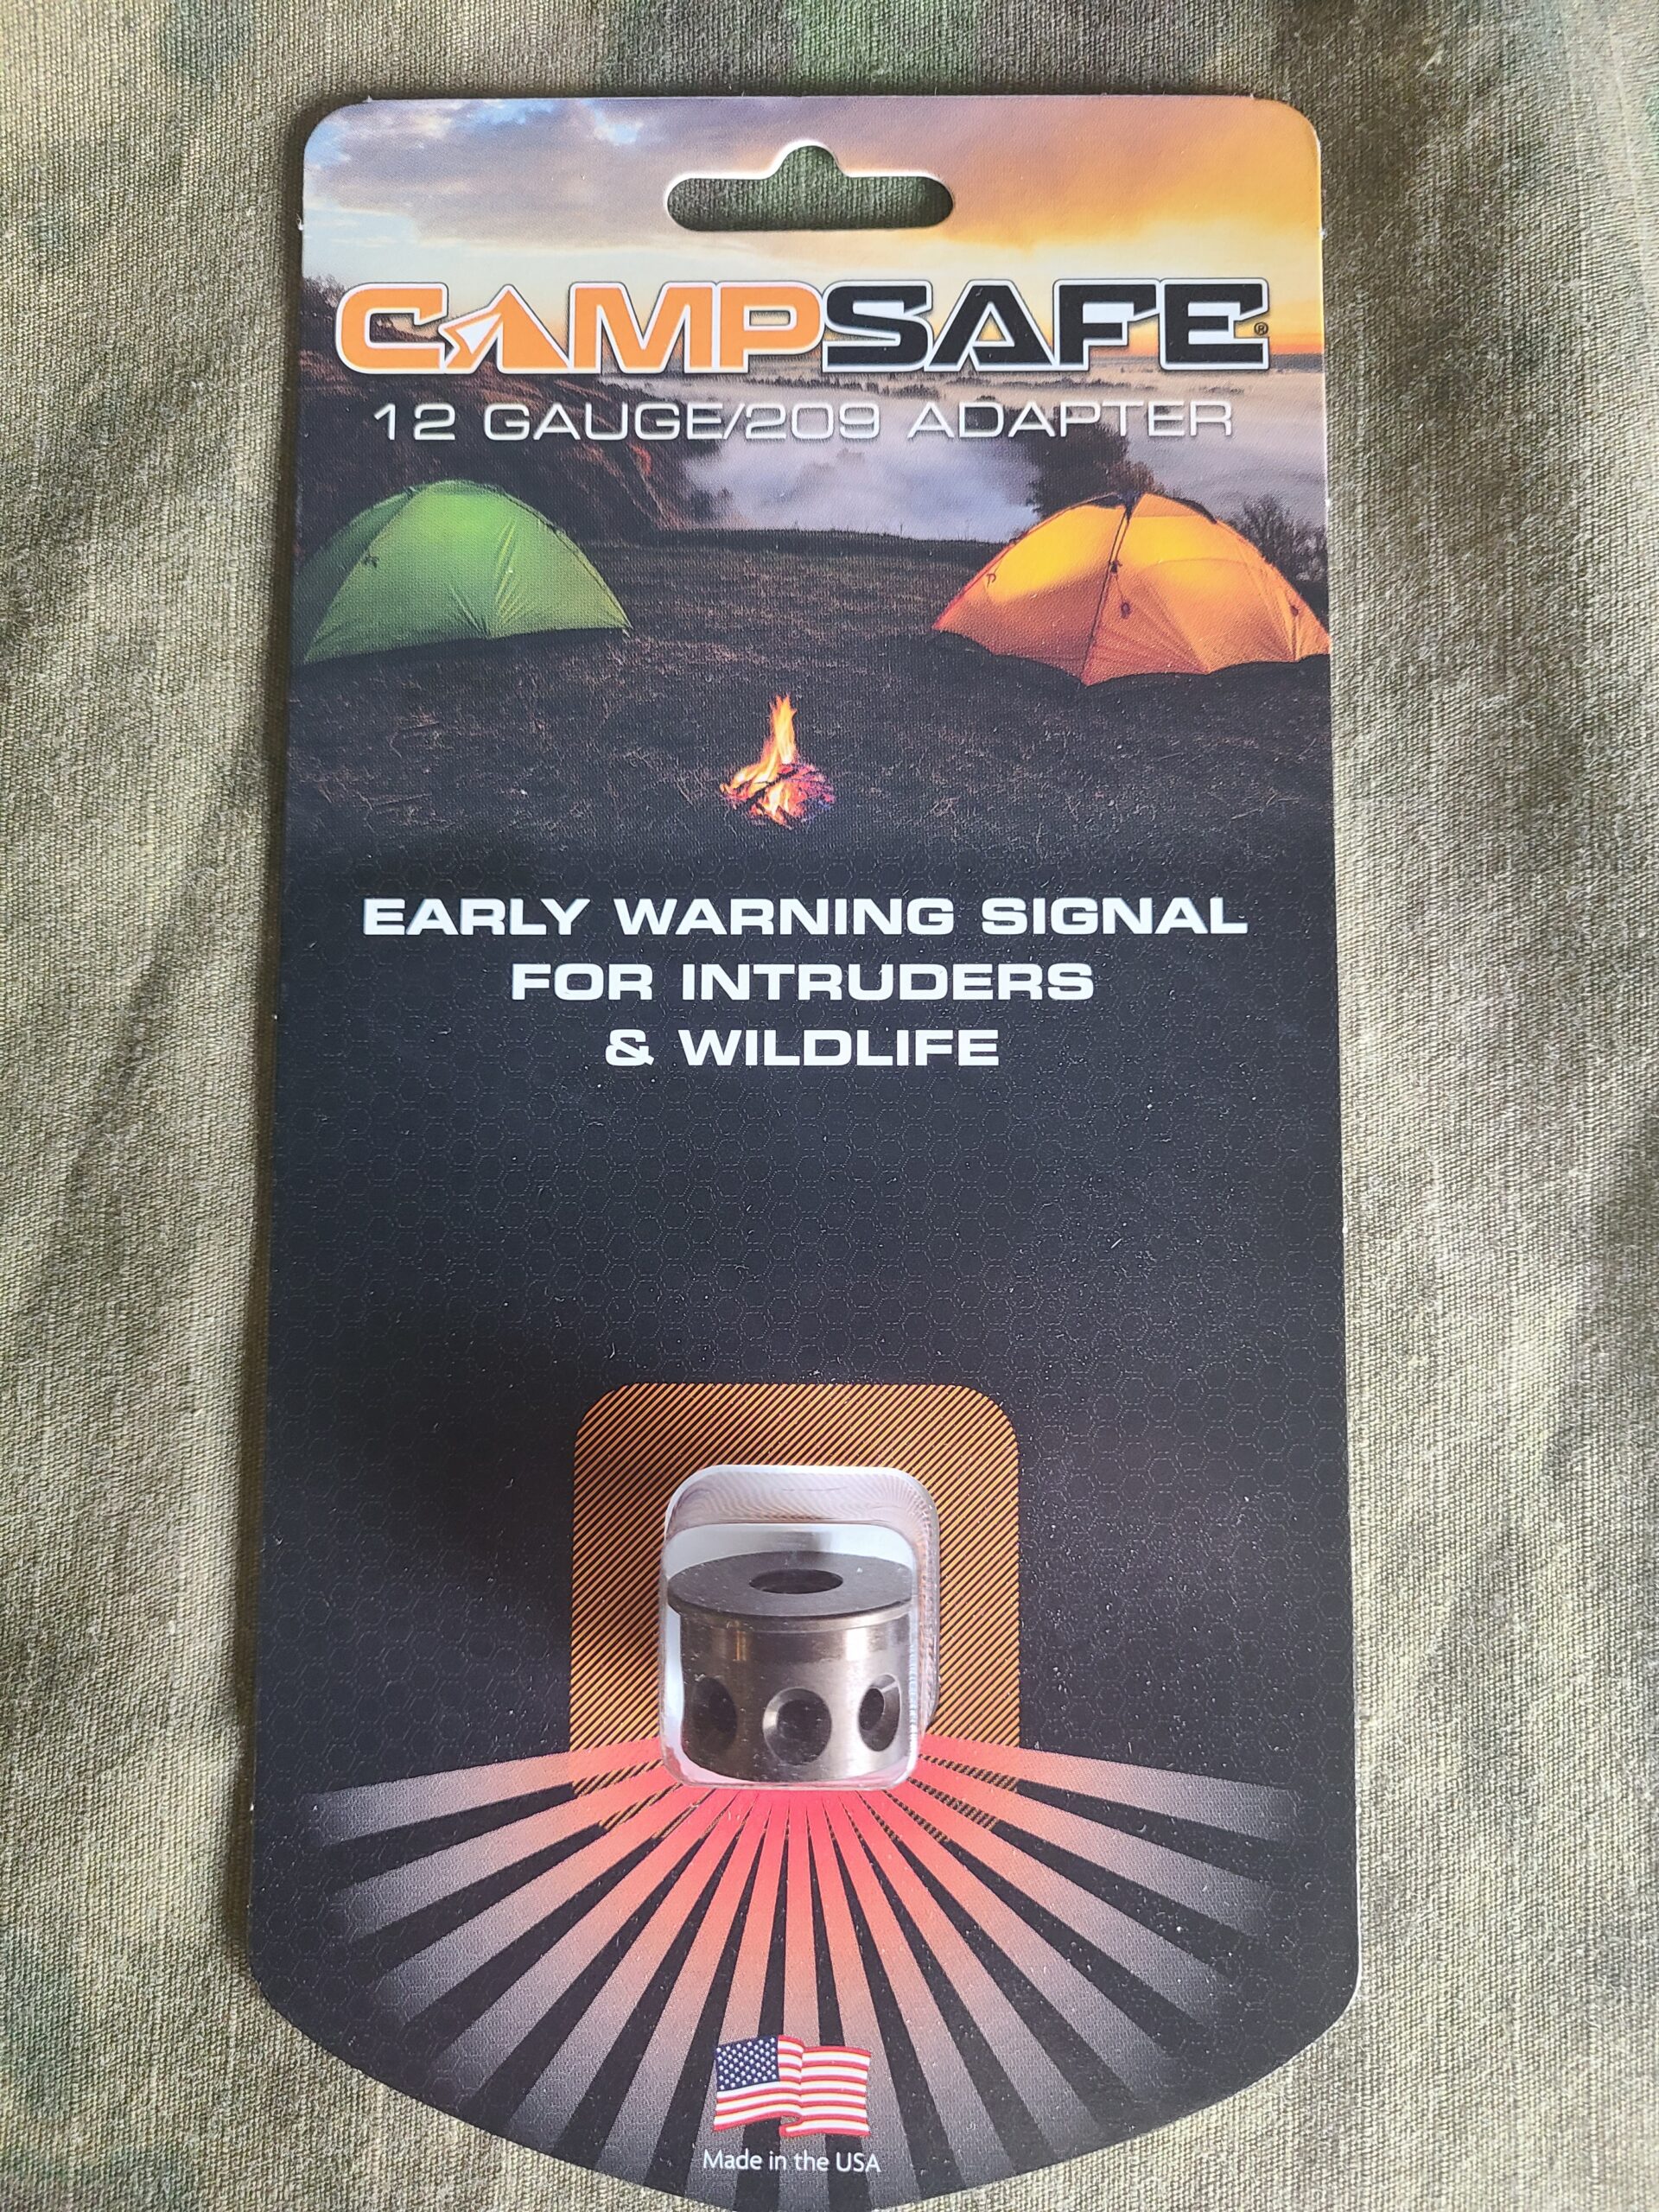 CAMP SAFE 209 PRIMER ADAPTER